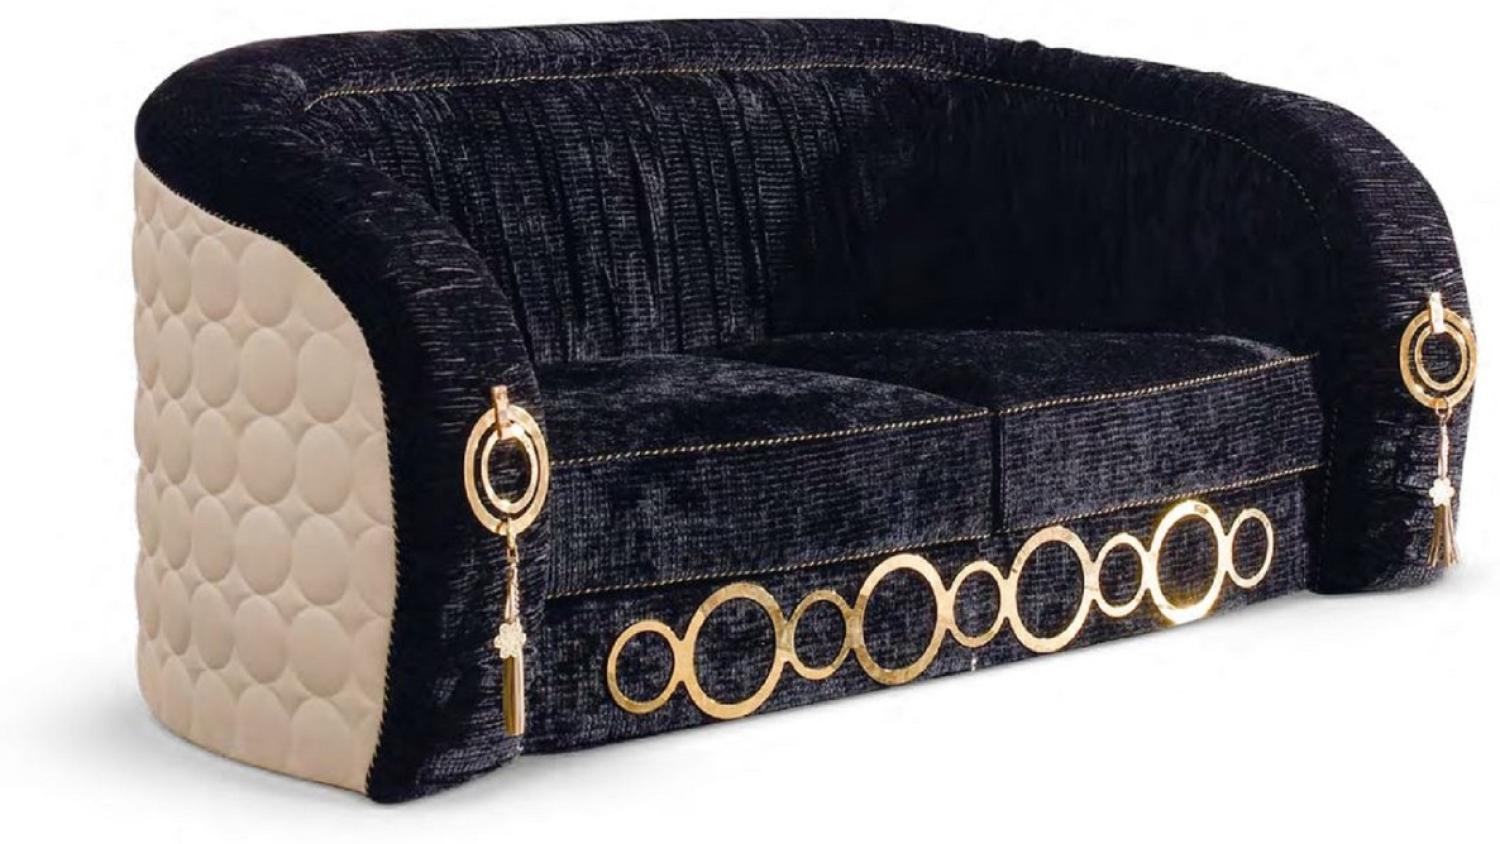 Casa Padrino Luxus Sofa mit Metall Ornamenten Schwarz / Beige / Gold 192 x 103 x H. 80 cm - Luxus Wohnzimmer & Hotel Möbel - Erstklassische Qualität - Made in Italy Bild 1